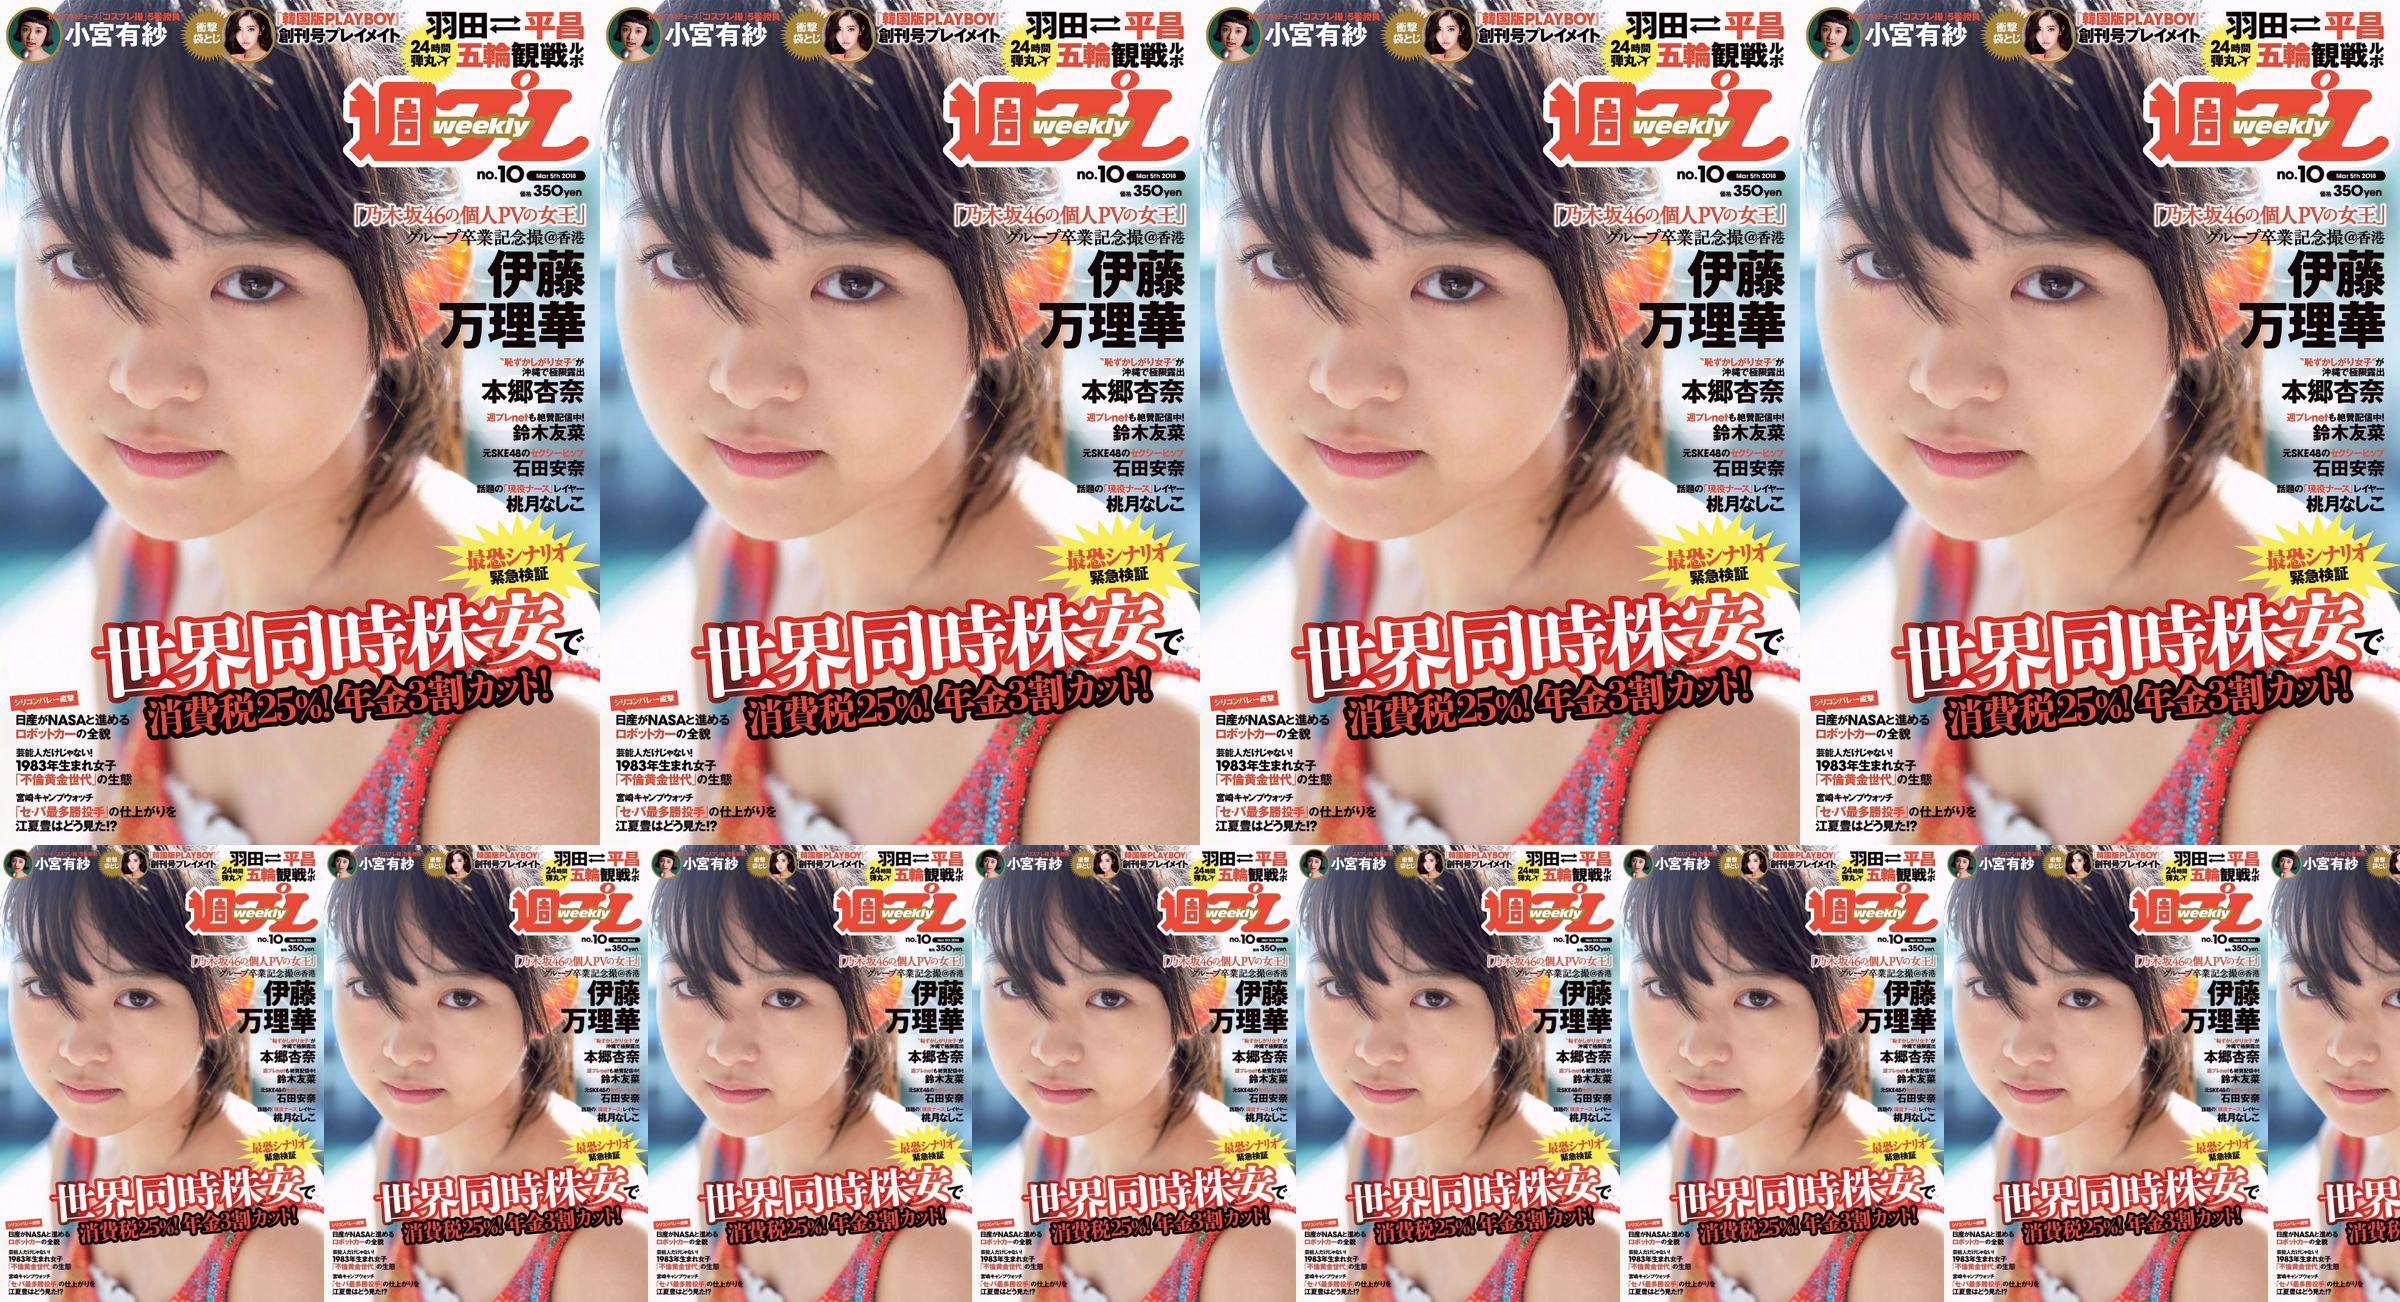 Marika Ito Yuuna Suzuki Anna Ishida Anna Hongo Nashiko Momotsuki Arisa Komiya Aoi Tsukasa Lee Young-hwa [Wöchentlicher Playboy] 2018 Nr. 10 Foto No.981327 Seite 14